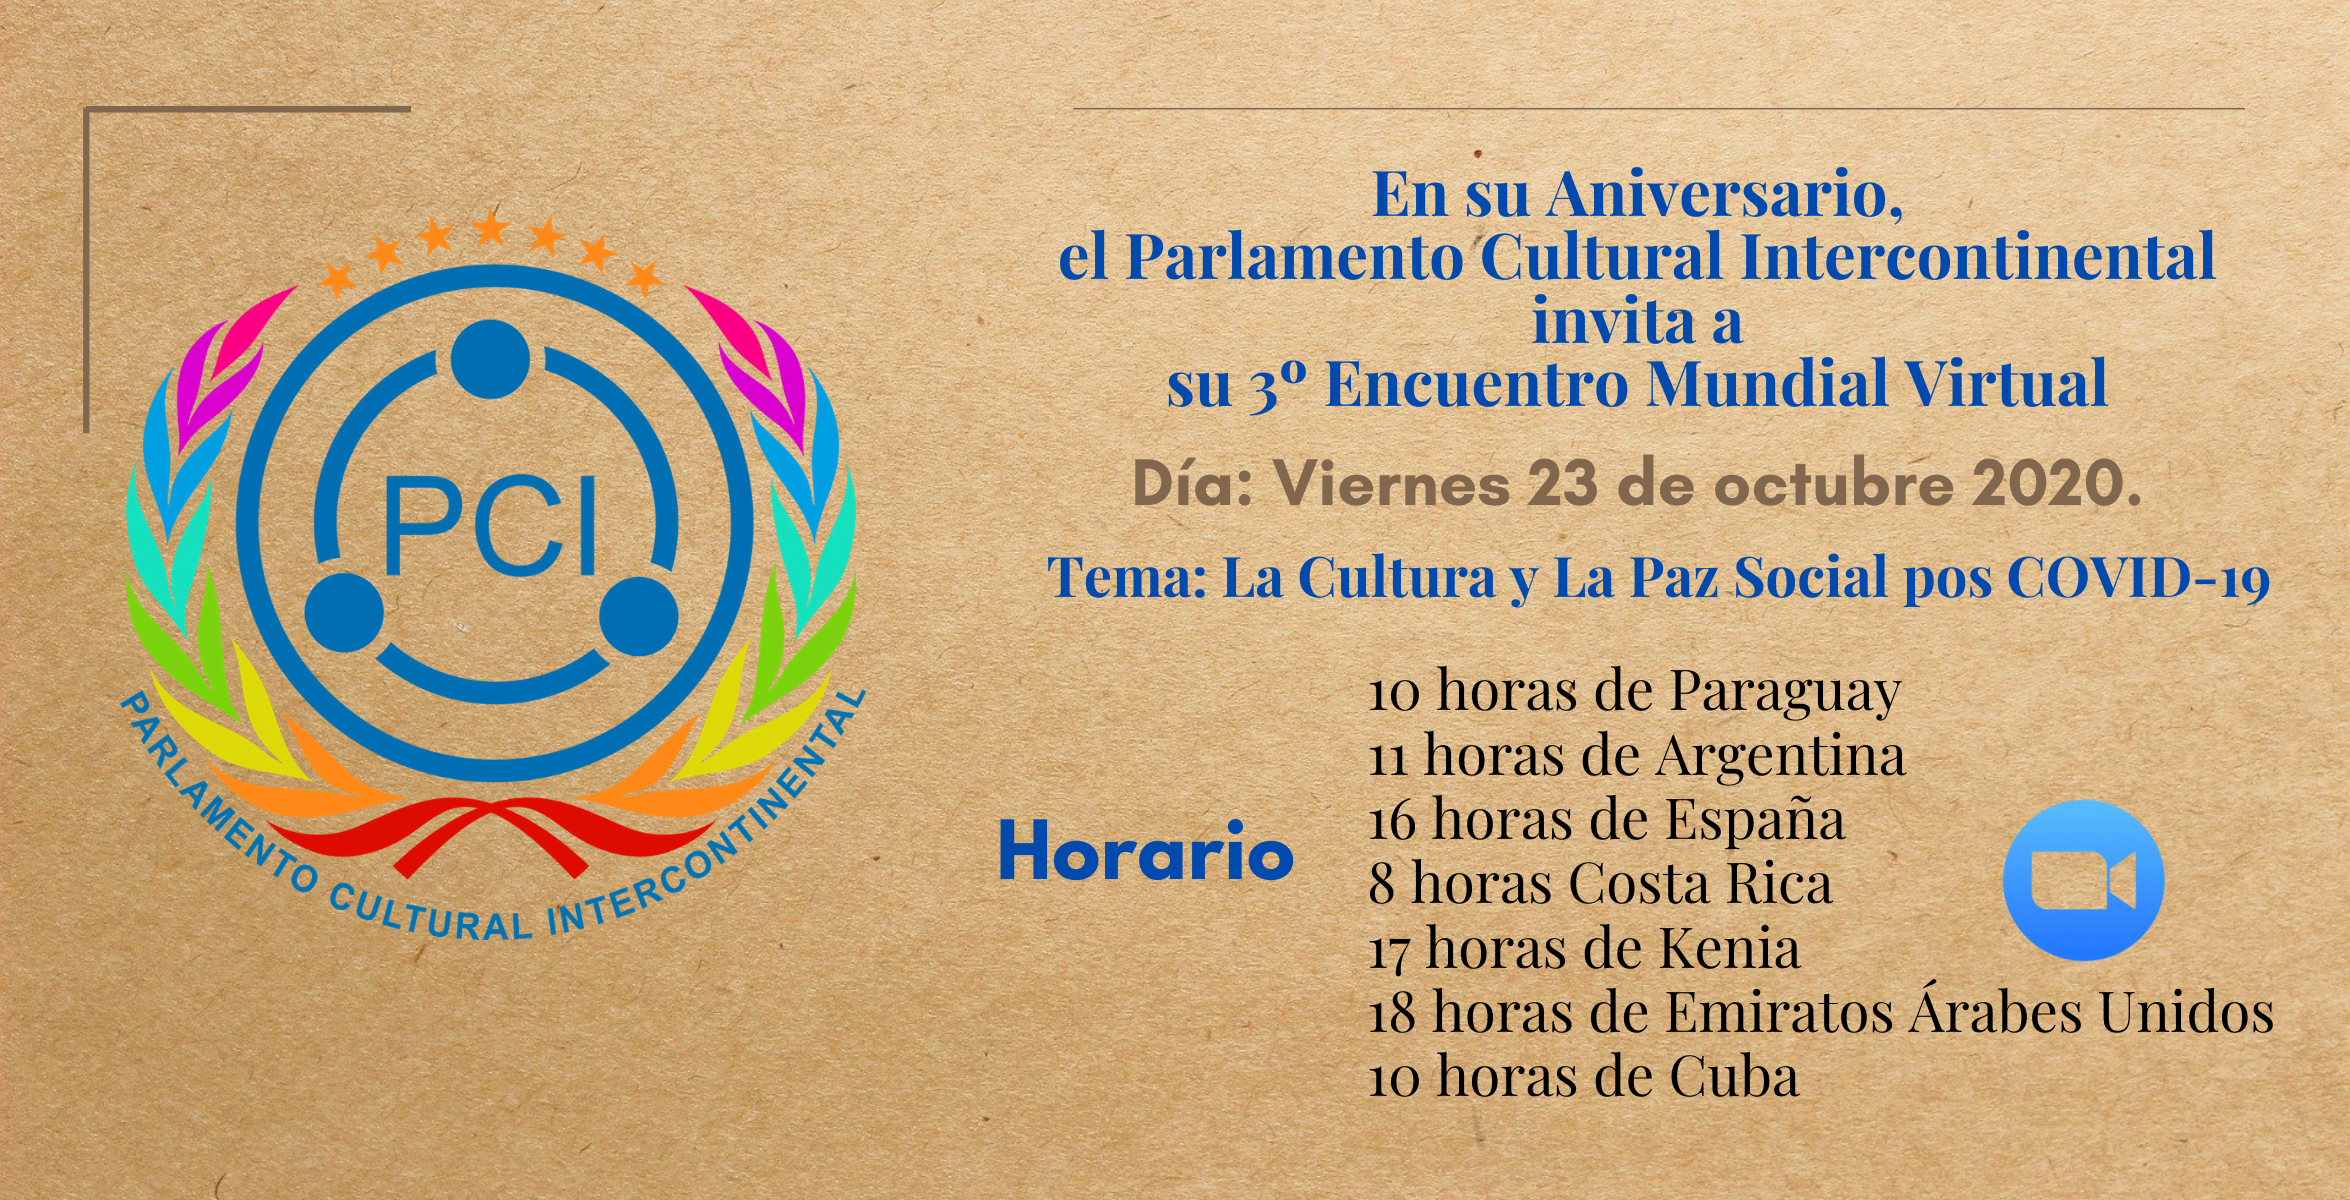 En este momento estás viendo Bienvenidos al 3º Encuentro Mundial del Parlamento Cultural Intercontinental- viernes 23 de octubre 2020